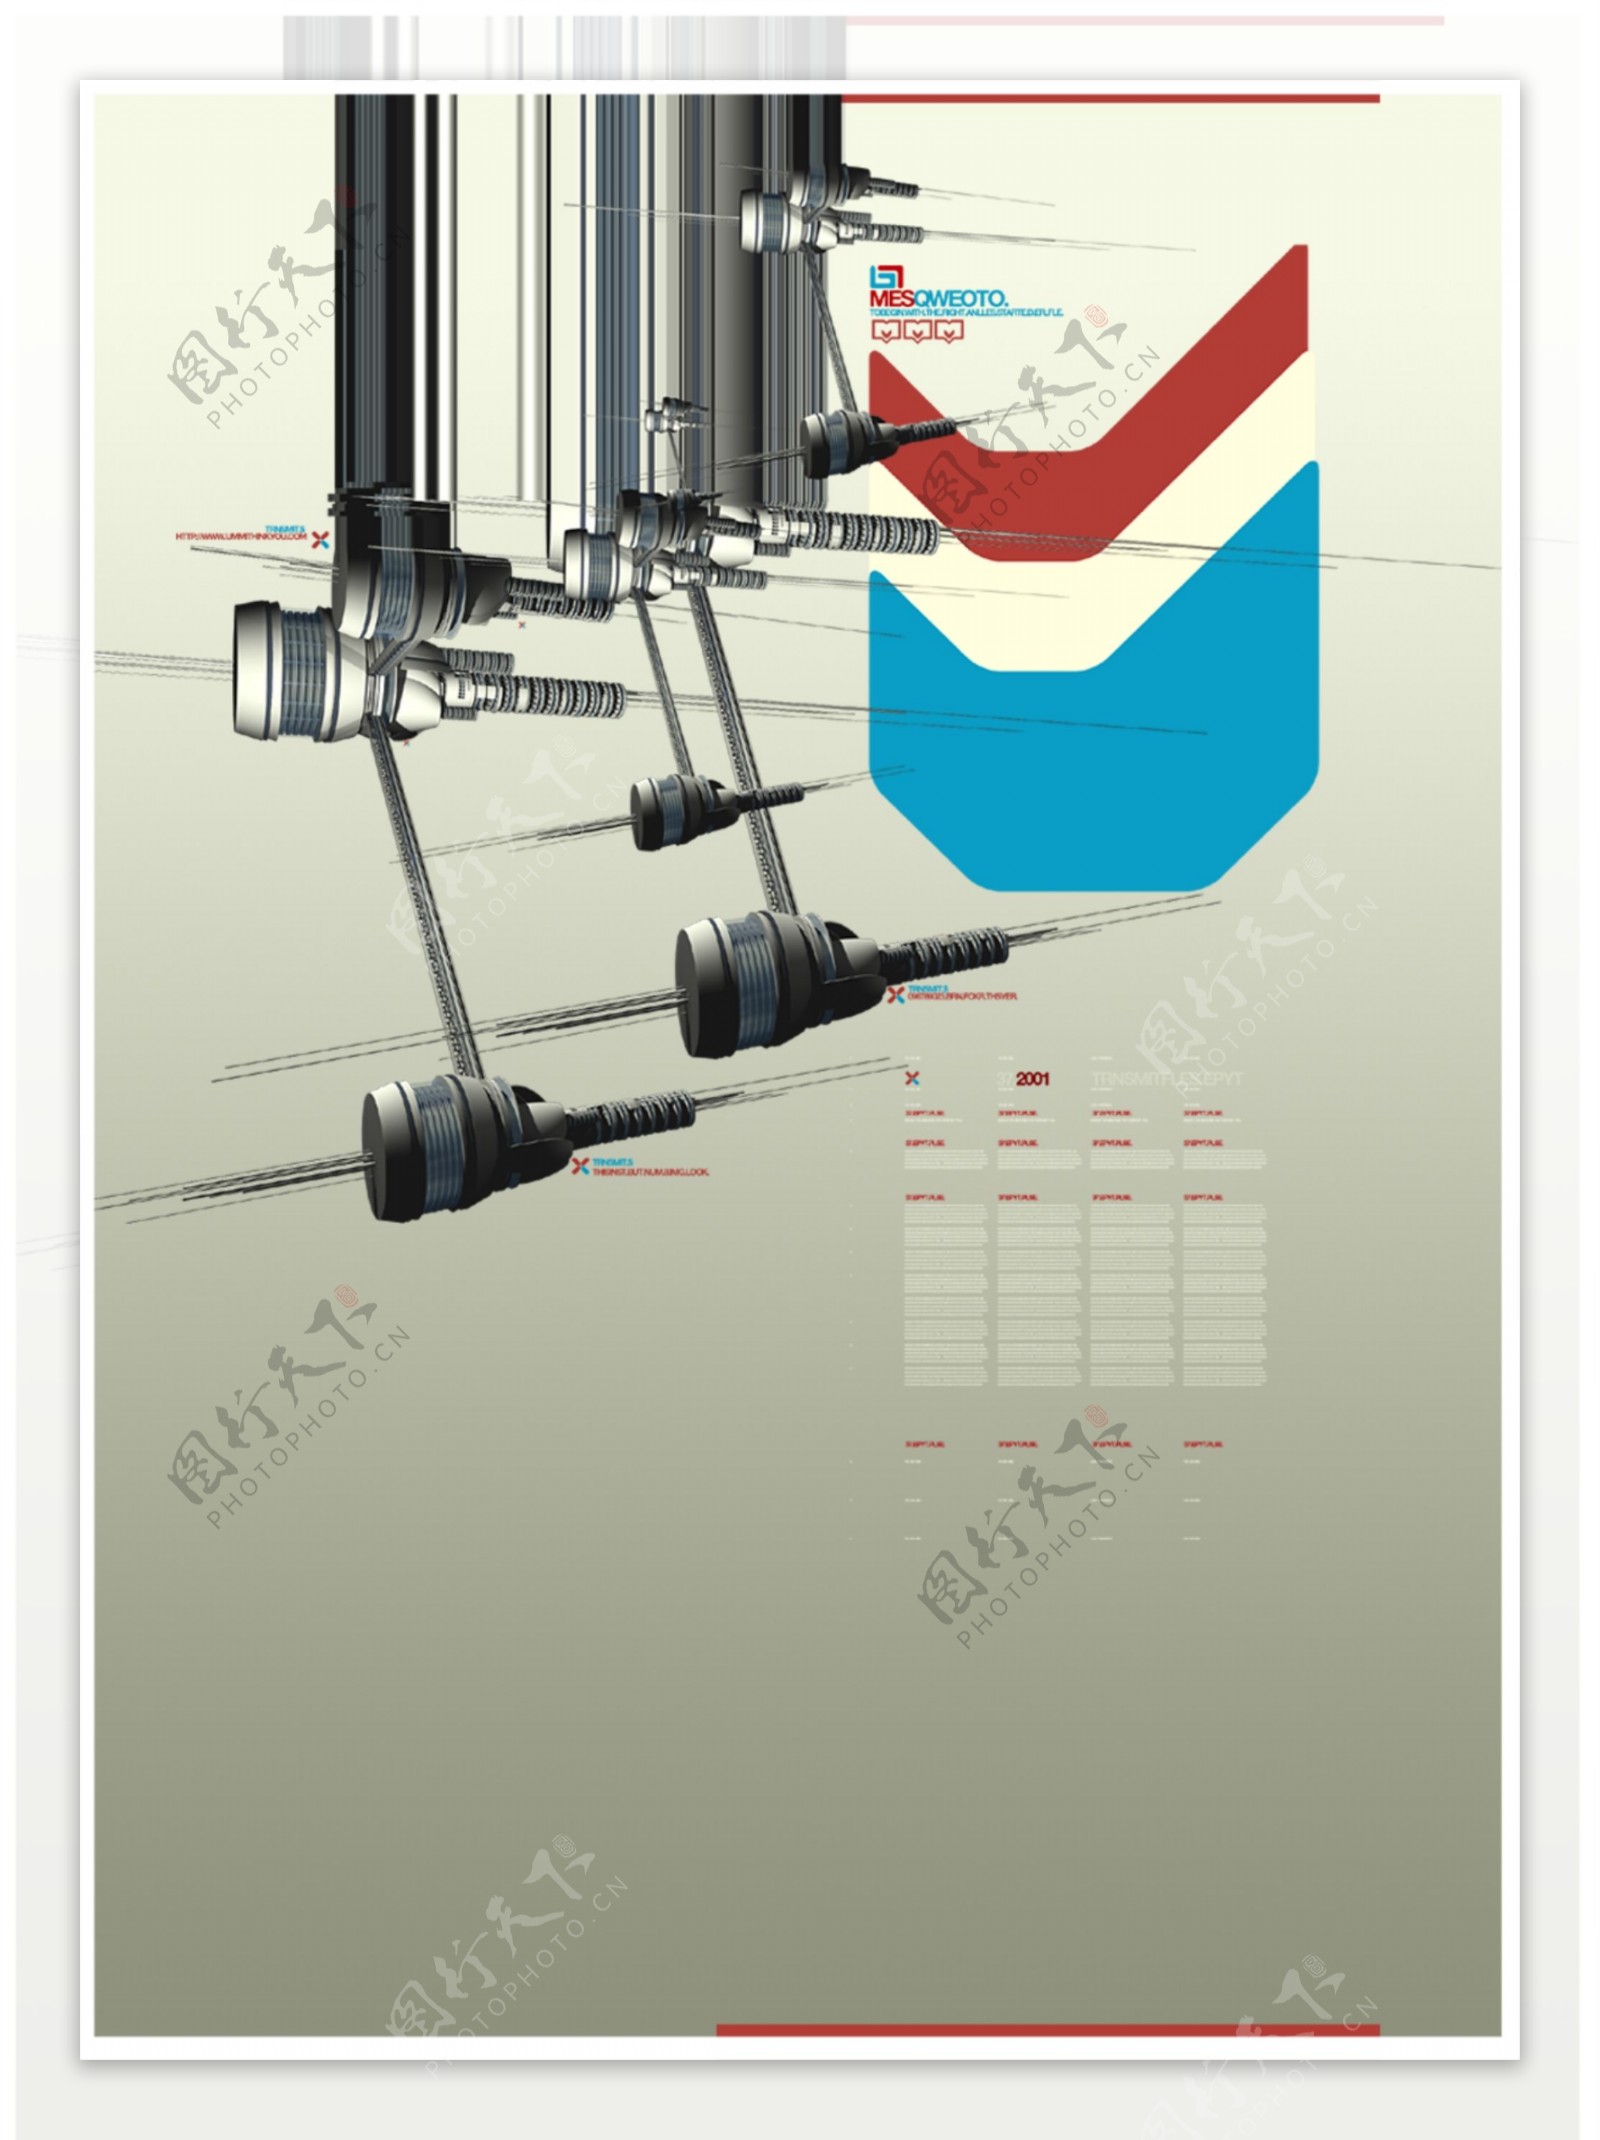 意识反噬创意设计工业设计素材之3d打印机